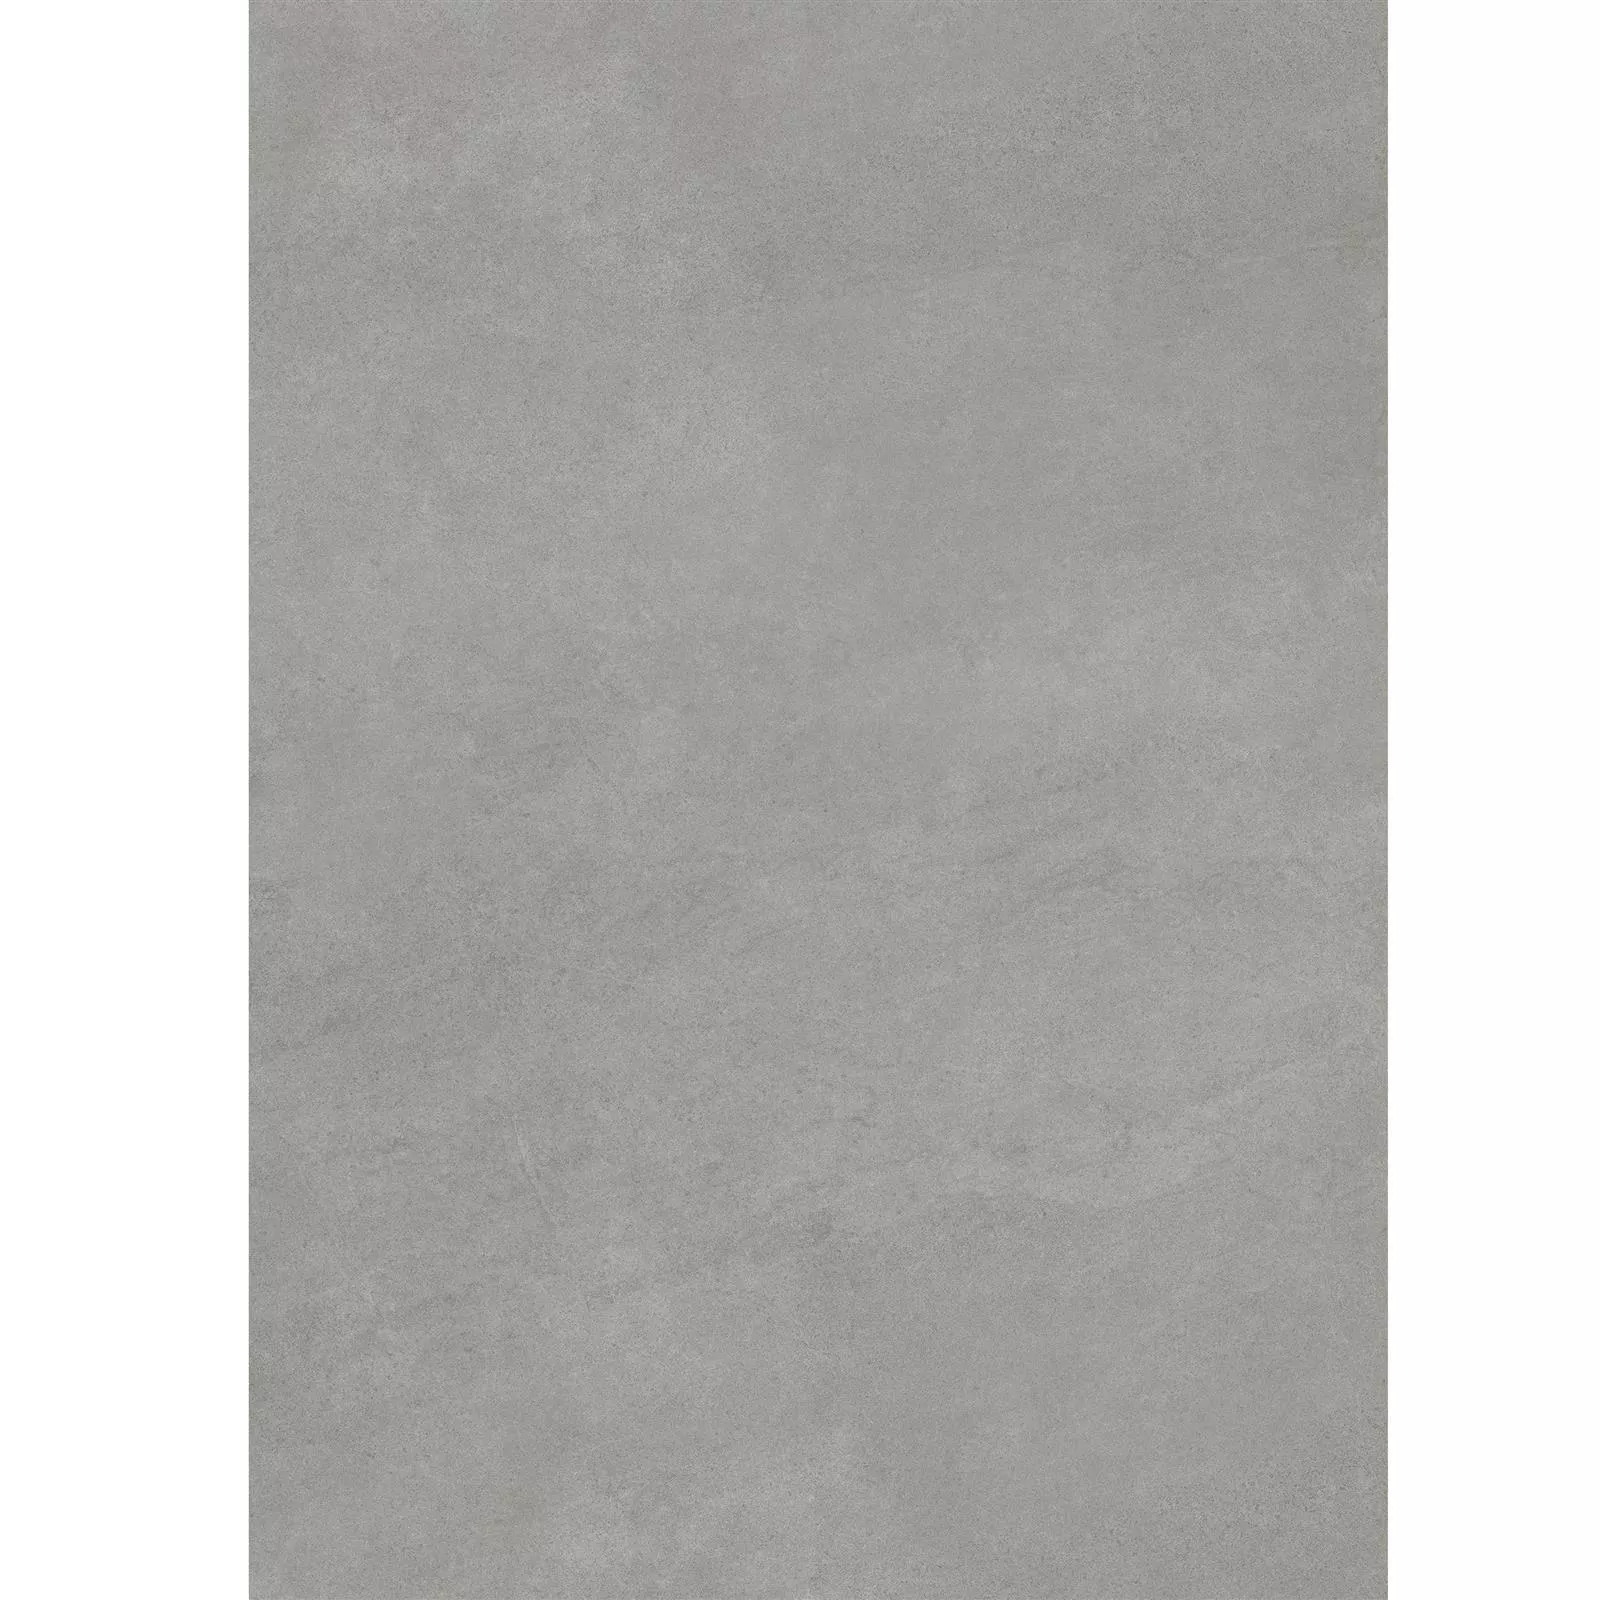 Terrassenplatten Zement Optik Glinde Grau 60x120cm